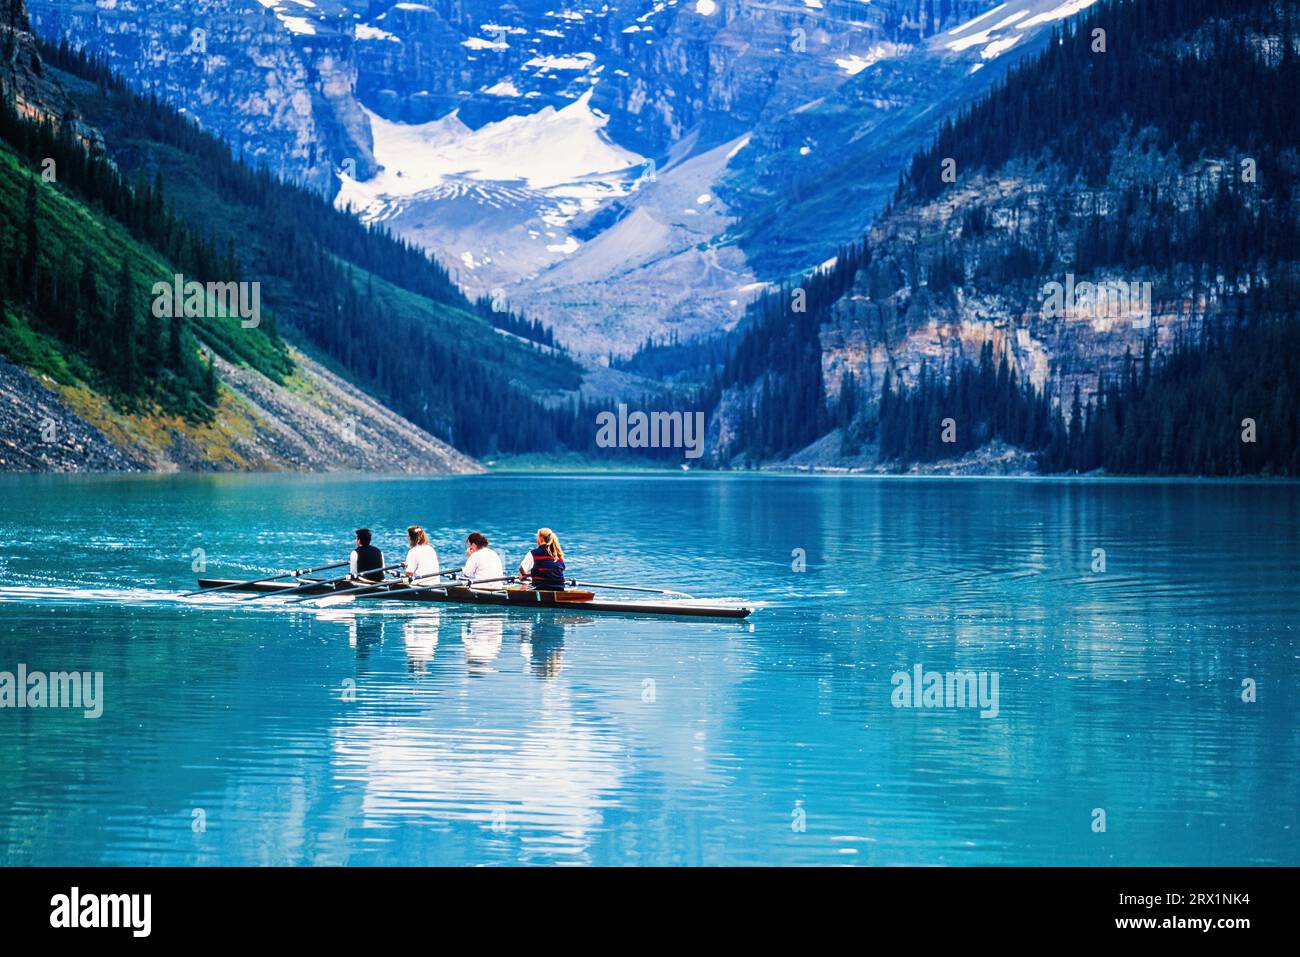 Quatre femmes pagayant en kayak dans un magnifique lac de montagne, parc national Banff, Lake louise, Alberta, Canada Banque D'Images